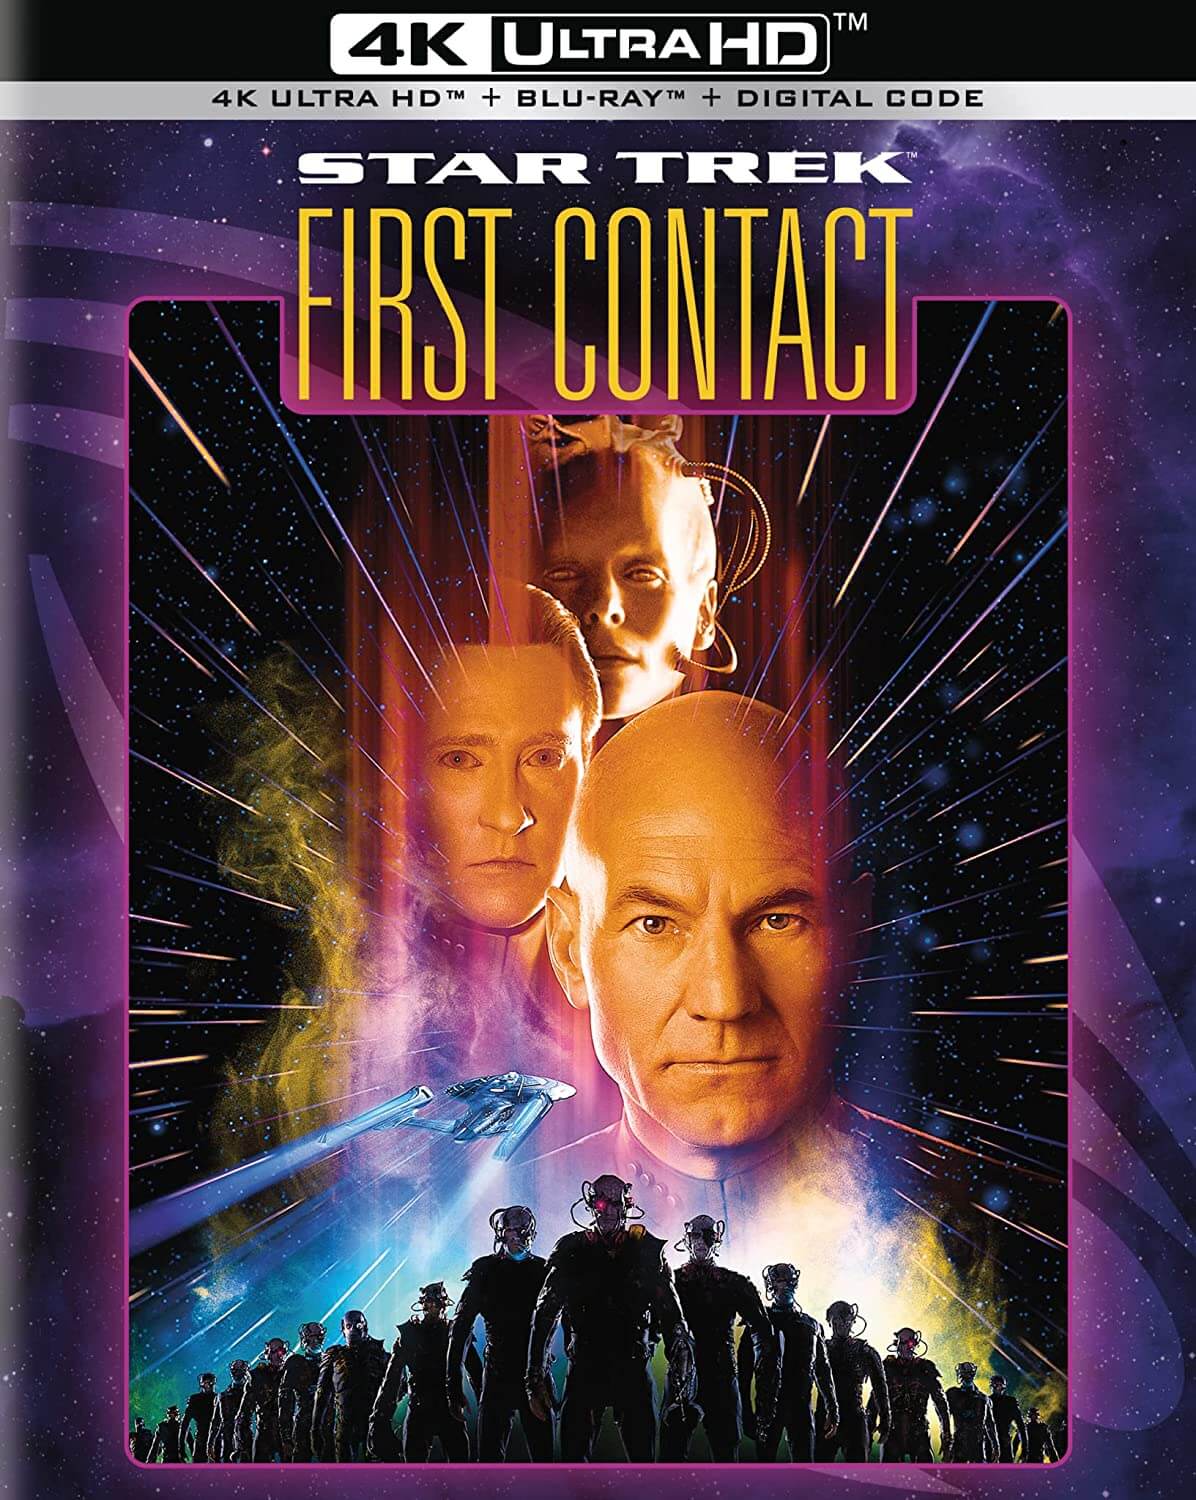 "Star Trek: First Contact"